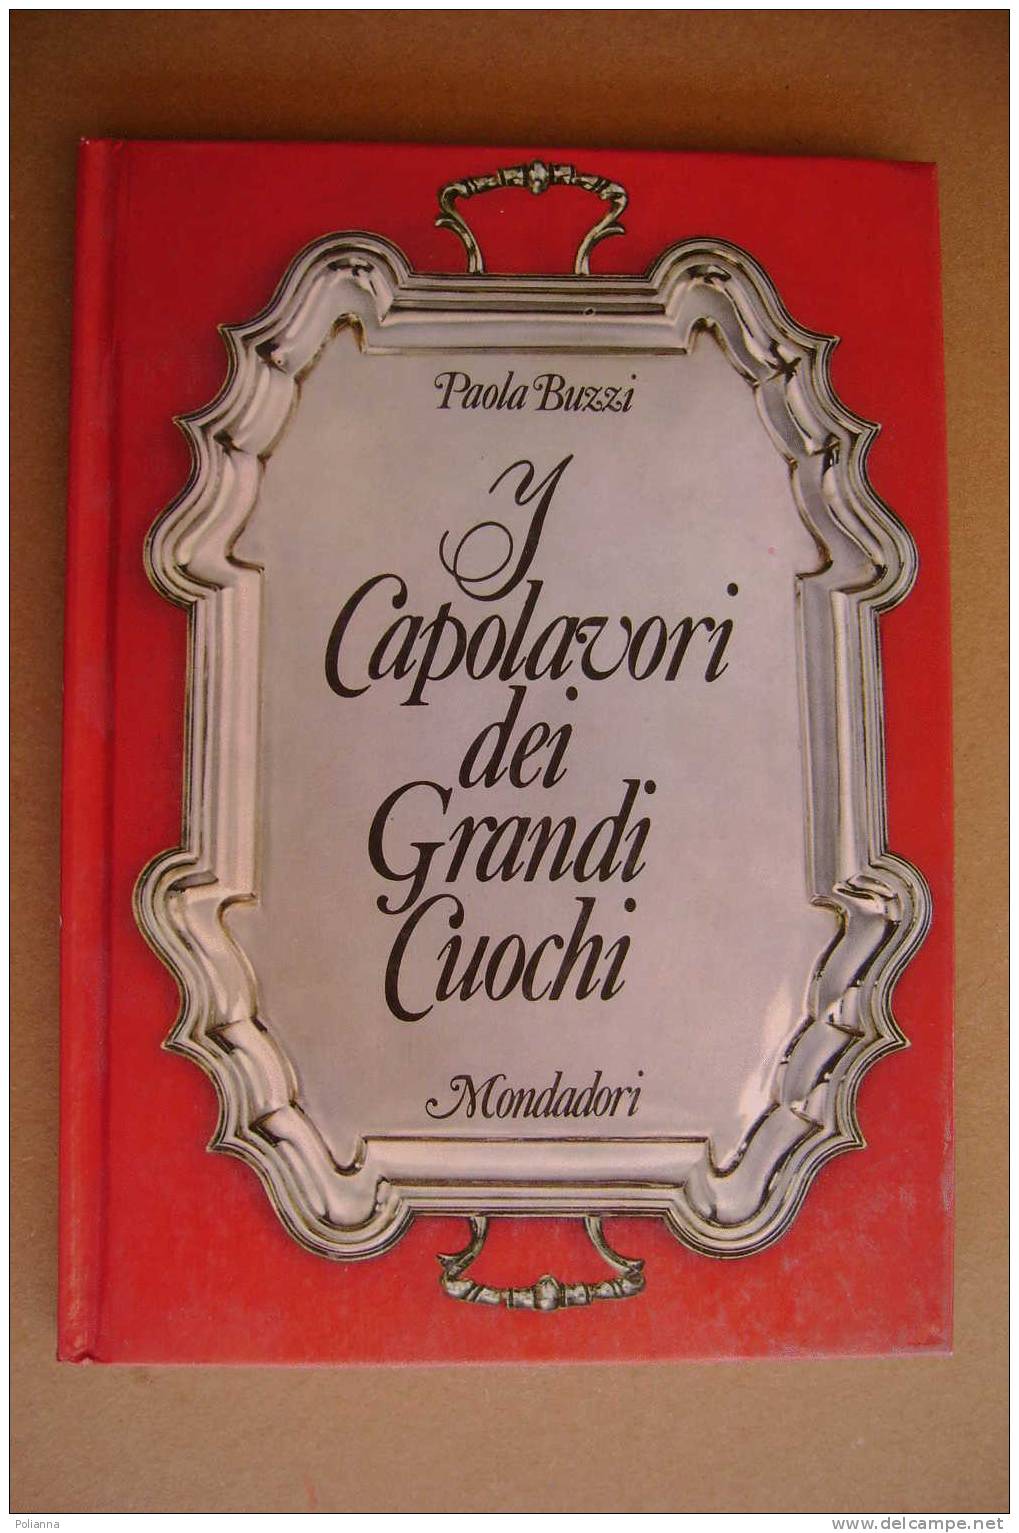 PAM/11 Paola Buzzi CAPOLAVORI DEI GRANDI CUOCHI Mondadori 1971/GASTRONOMIA/CUCINA - Maison Et Cuisine